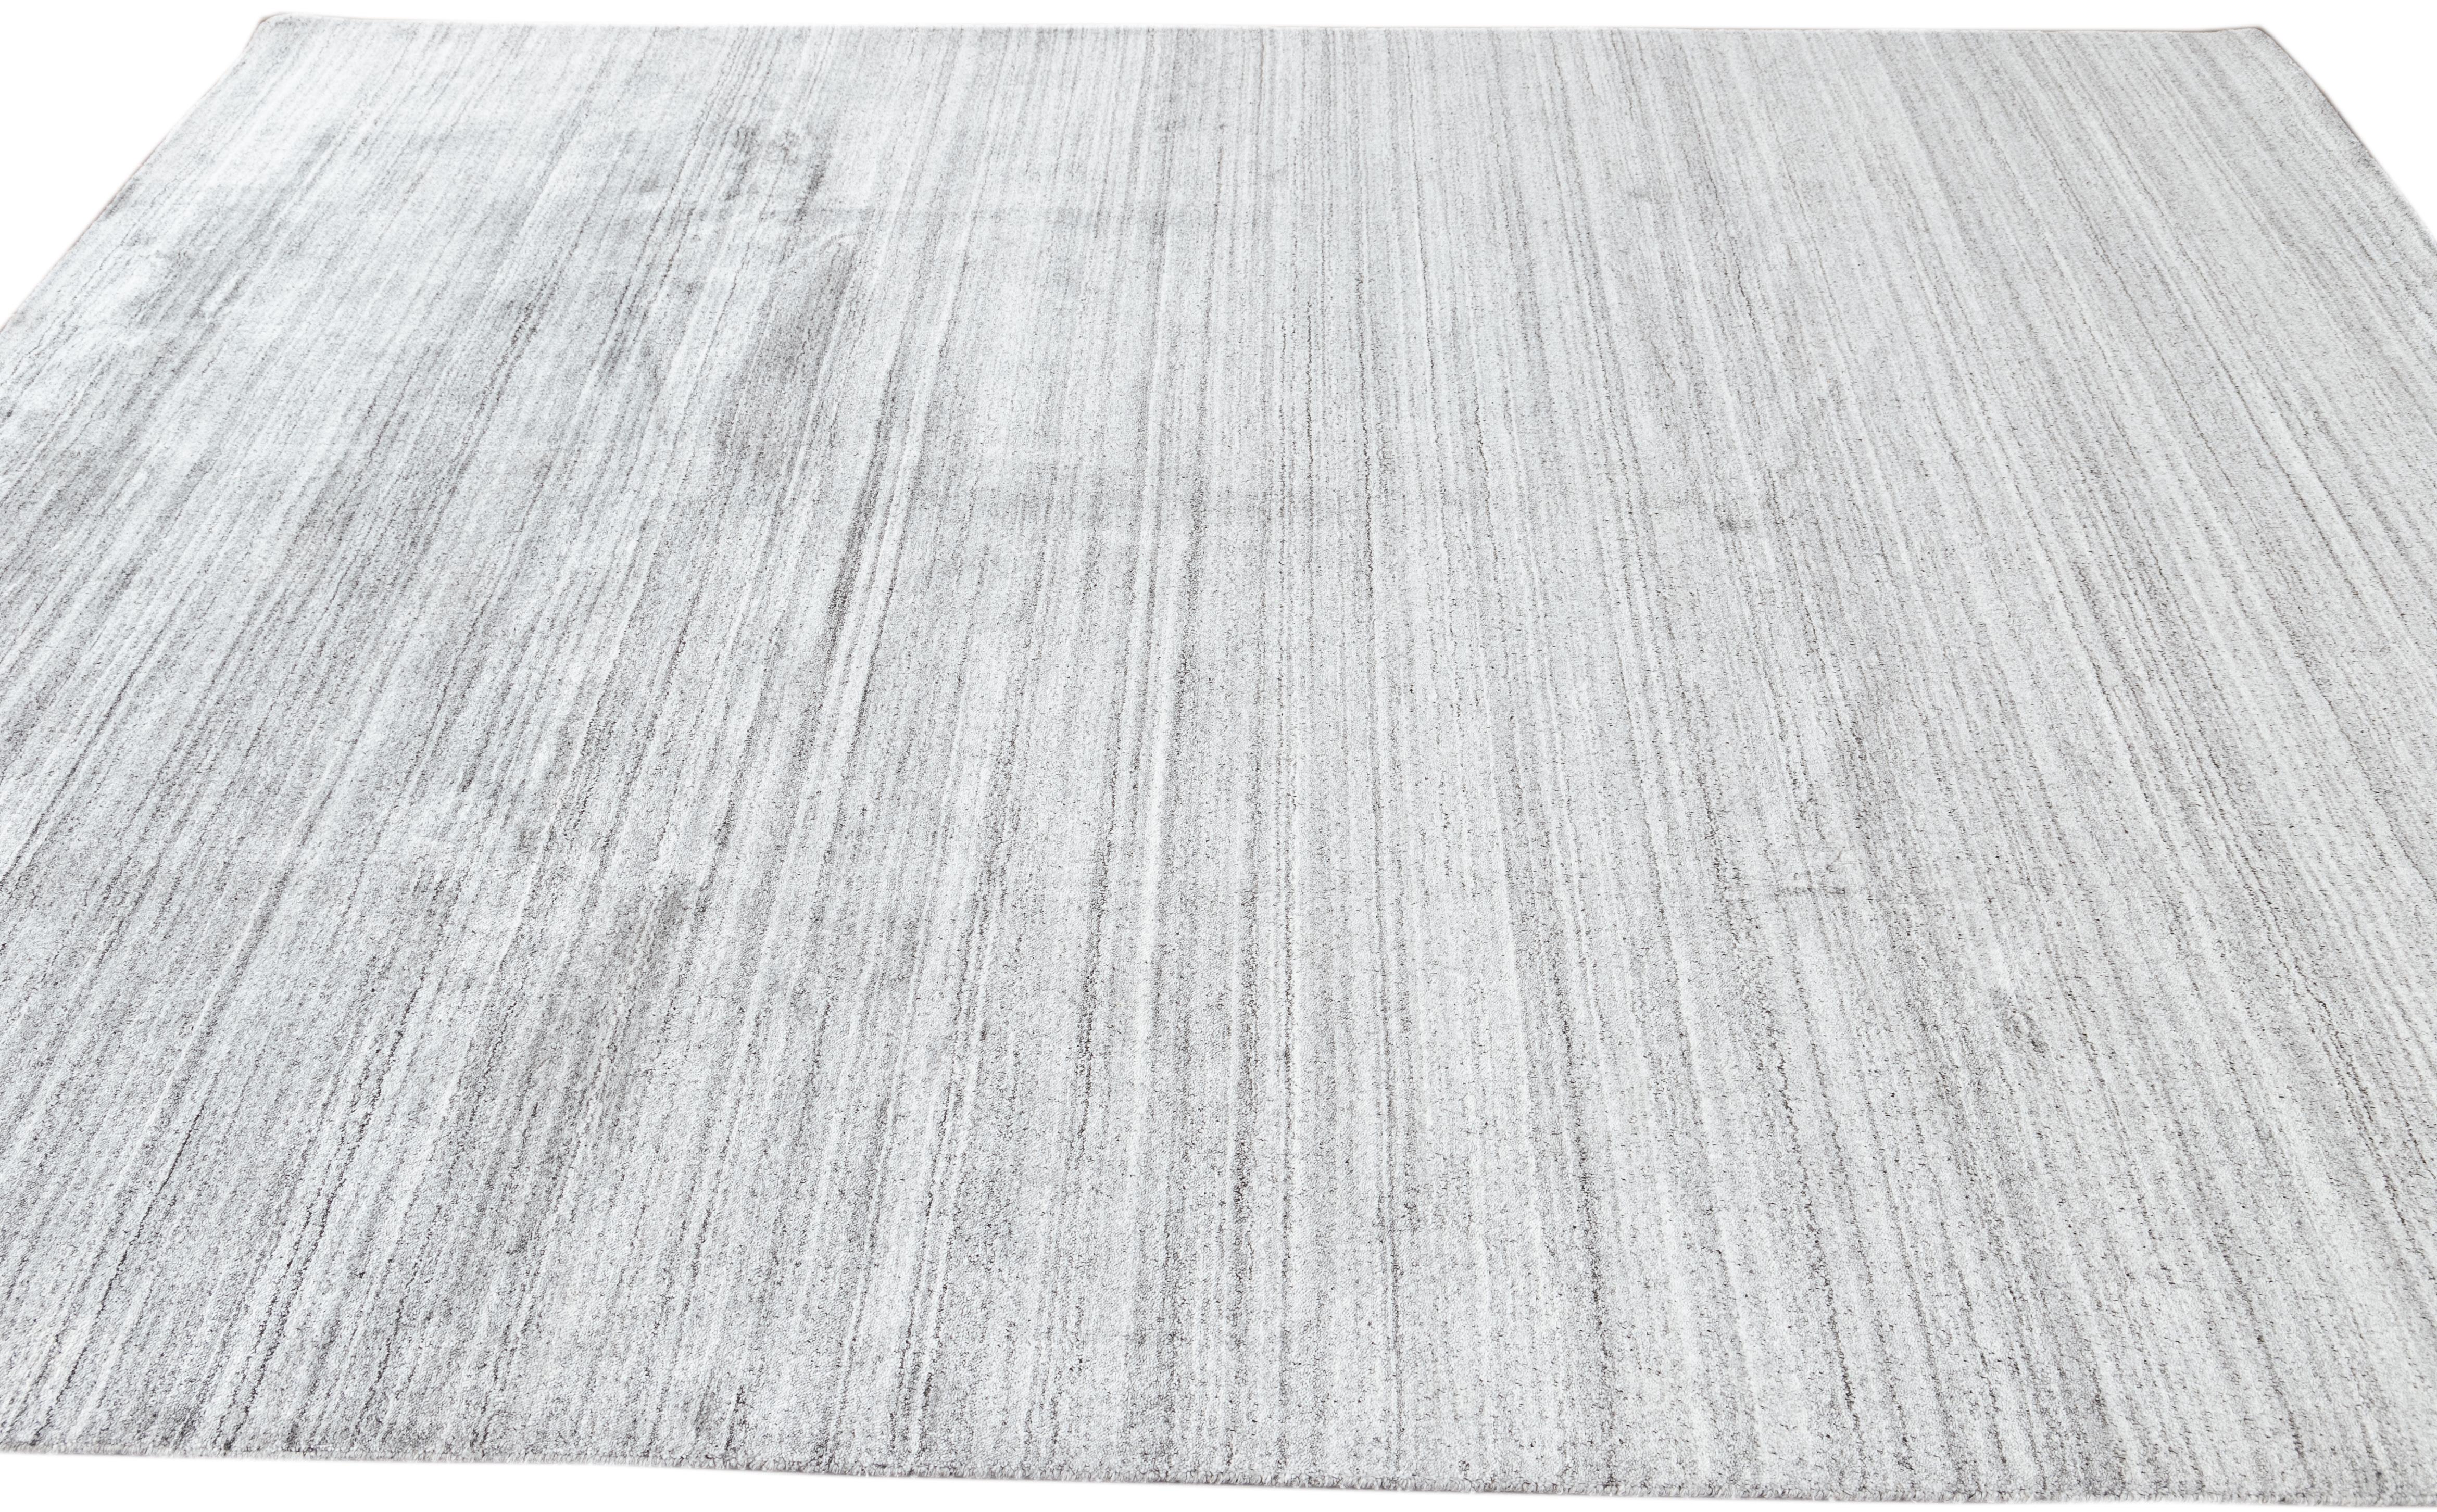 Schöne Apadana's handgefertigte Bambus & Seide indischen Rillen Teppich mit grauen Farben Feld. Dieser Teppich aus der Groove Collection hat ein durchgehendes Streifendesign.

Dieser Teppich misst 8' x 10'.

Kundenspezifische Farben und Größen